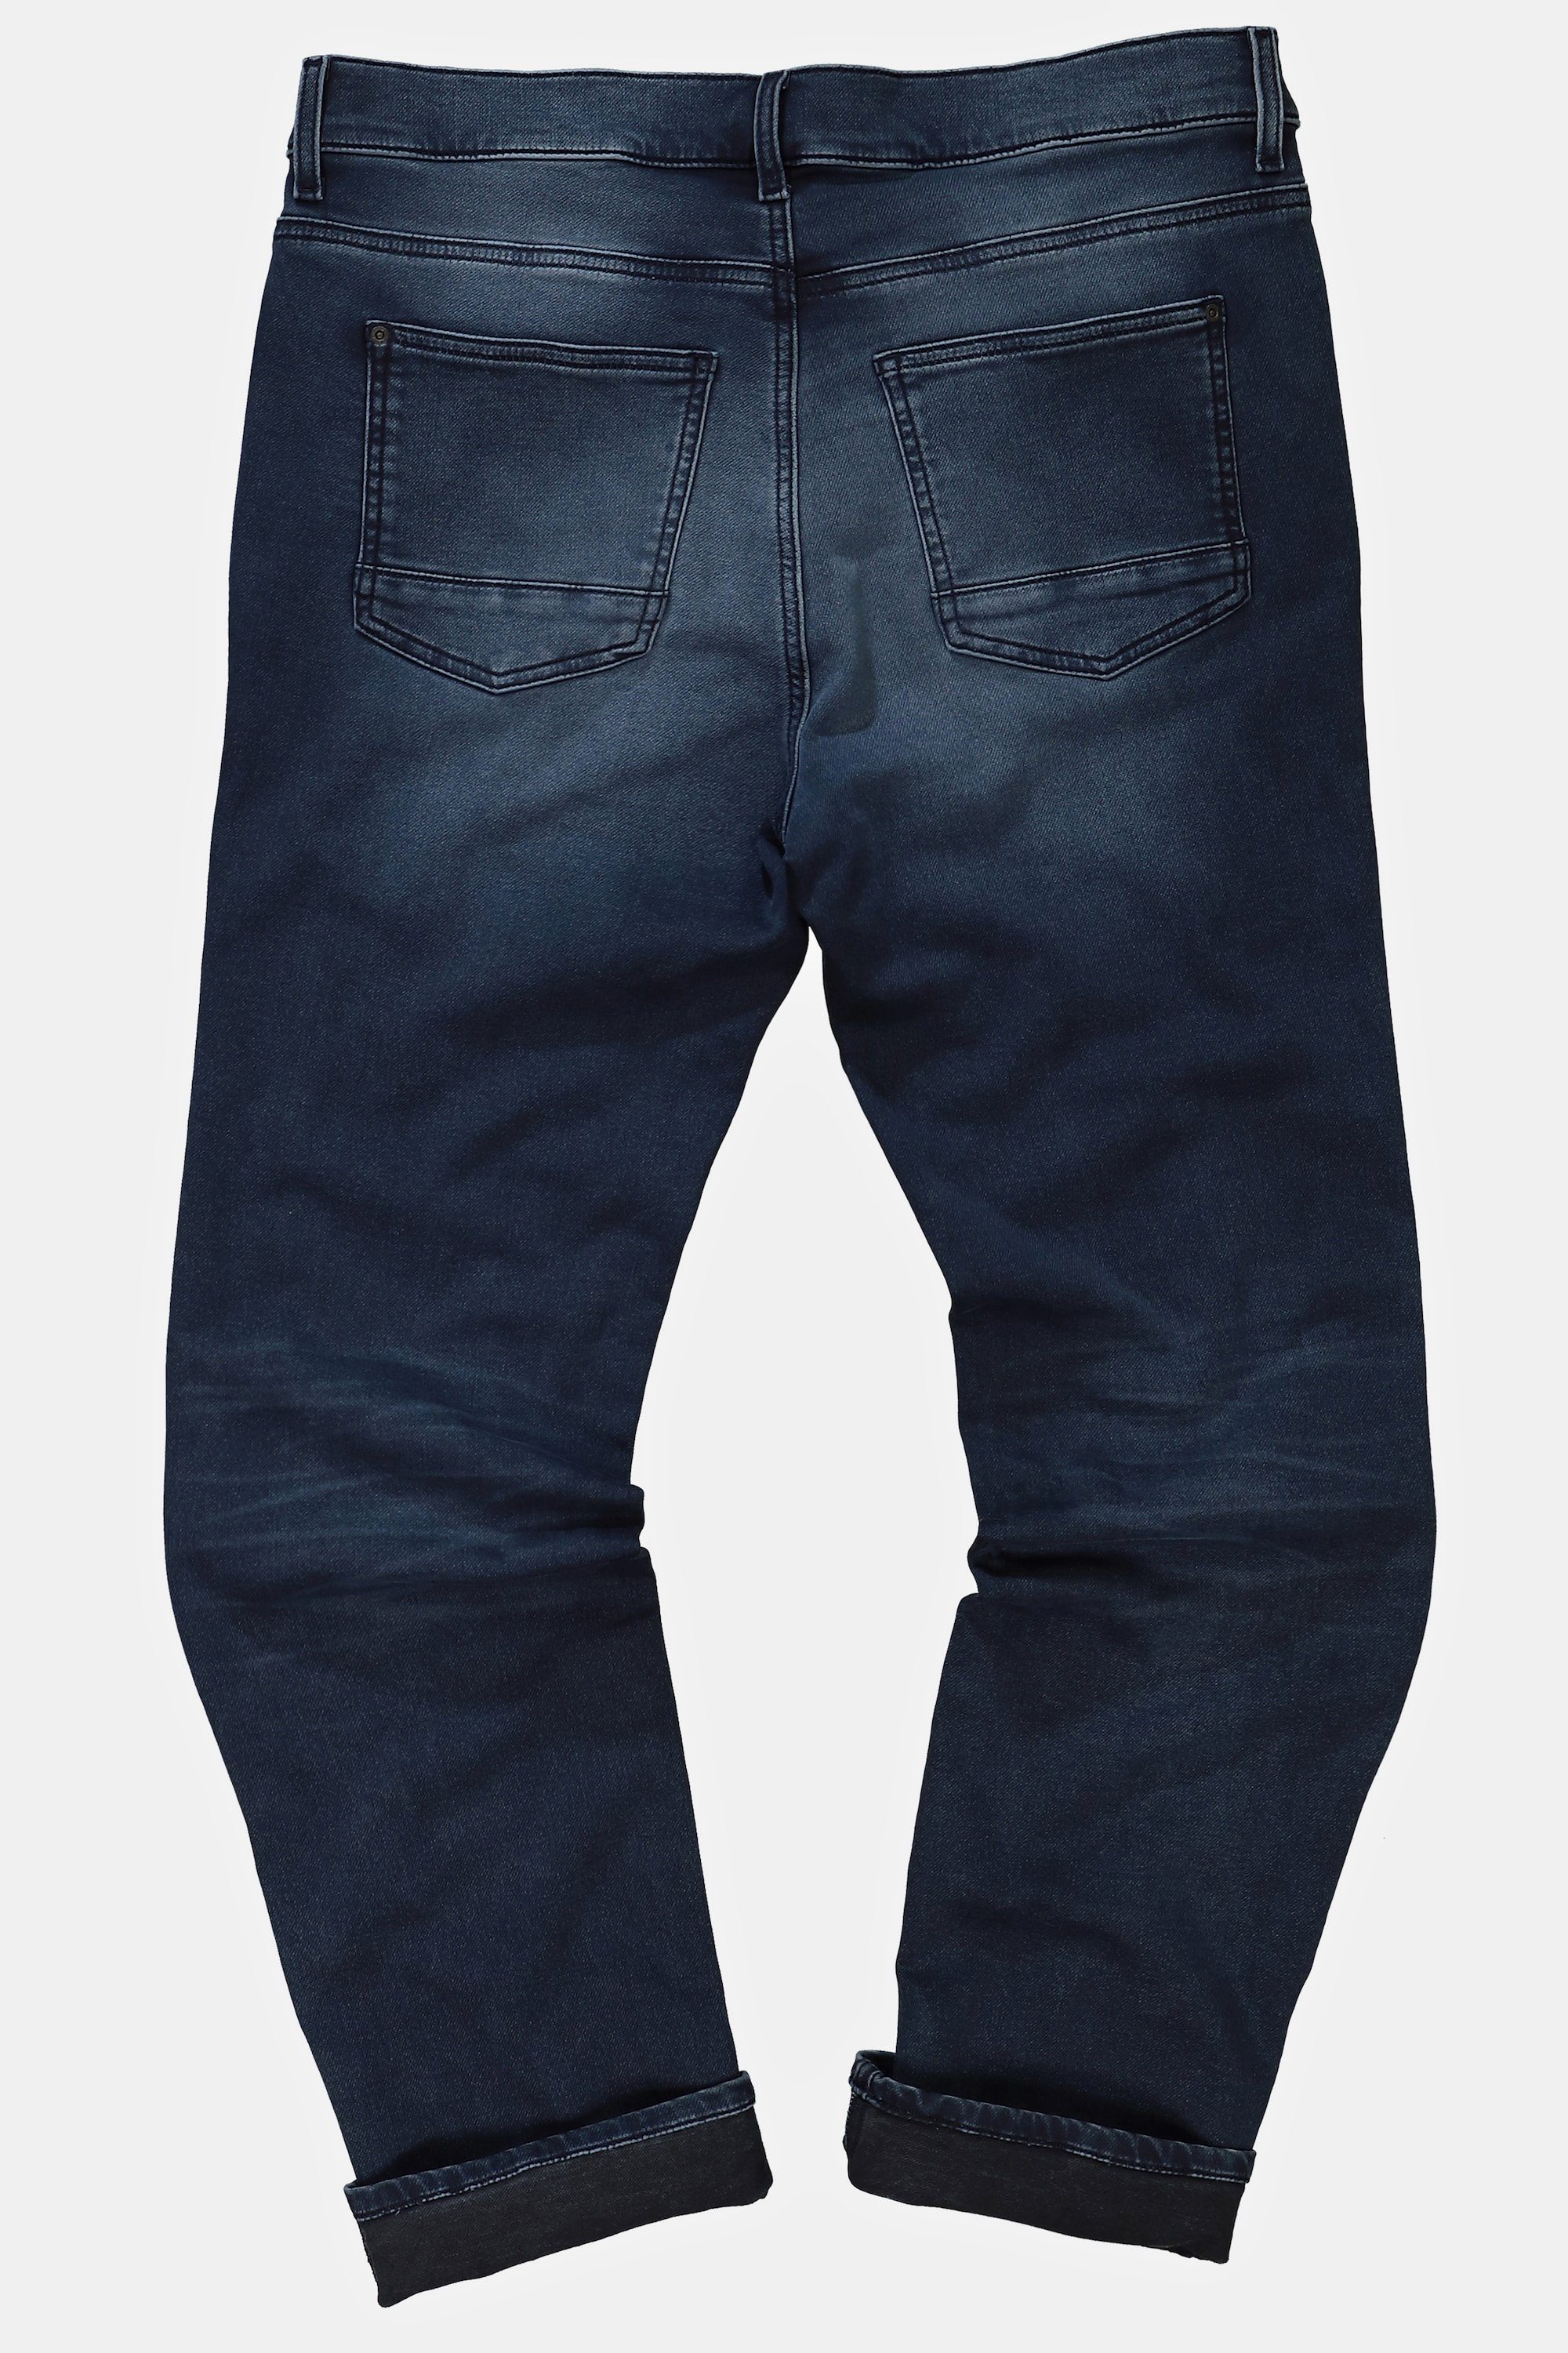 STHUGE 5-Pocket-Jeans STHUGE Jeans Straight Fit 5-Pocket FLEXLASTIC®